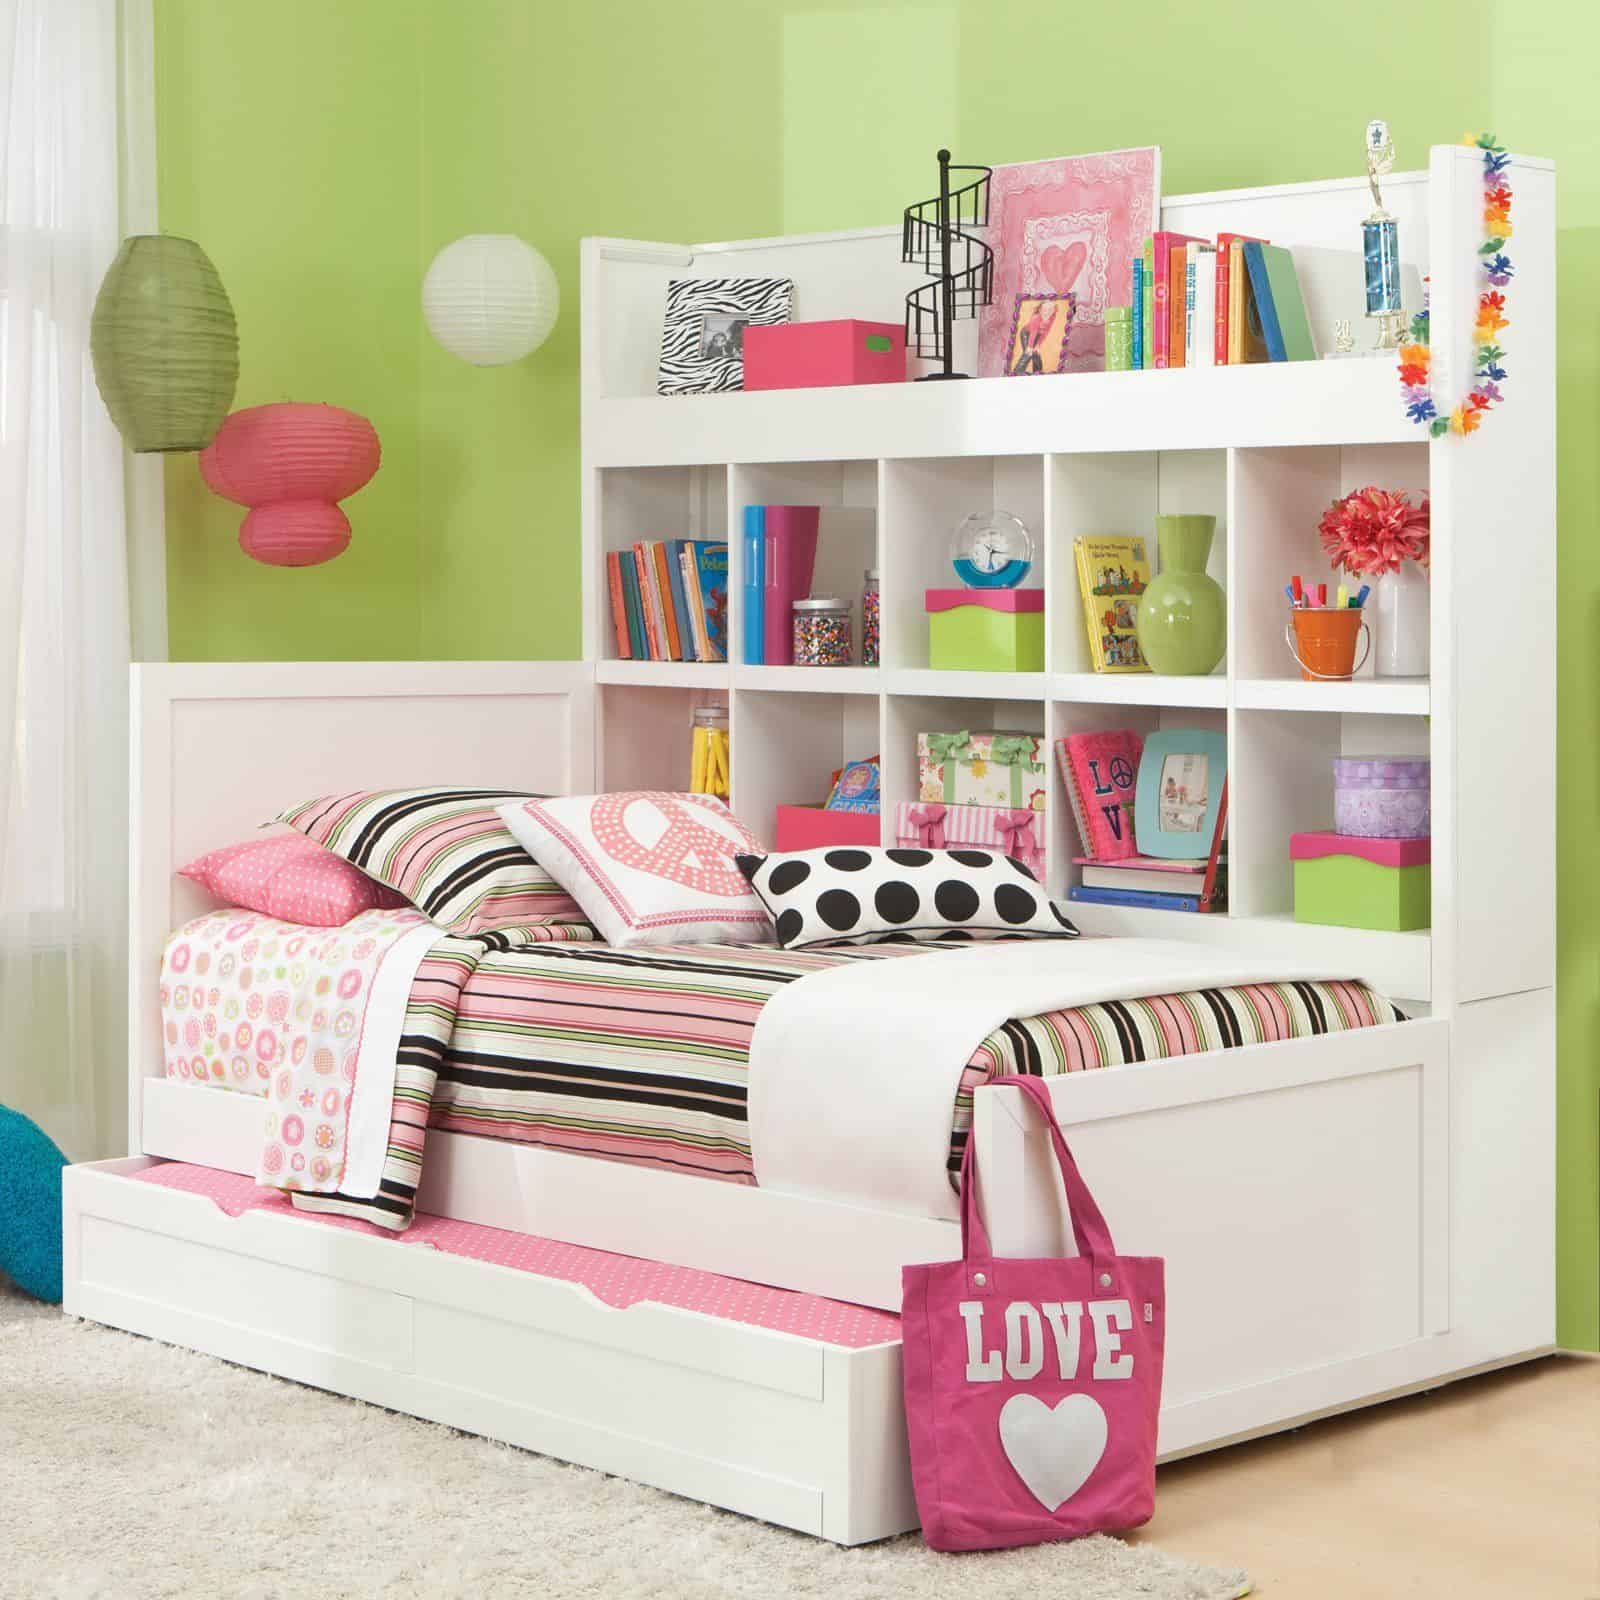 Gợi ý các kiểu giường trẻ em kèm kệ sách cho phòng nhỏ - Thế Giới ...